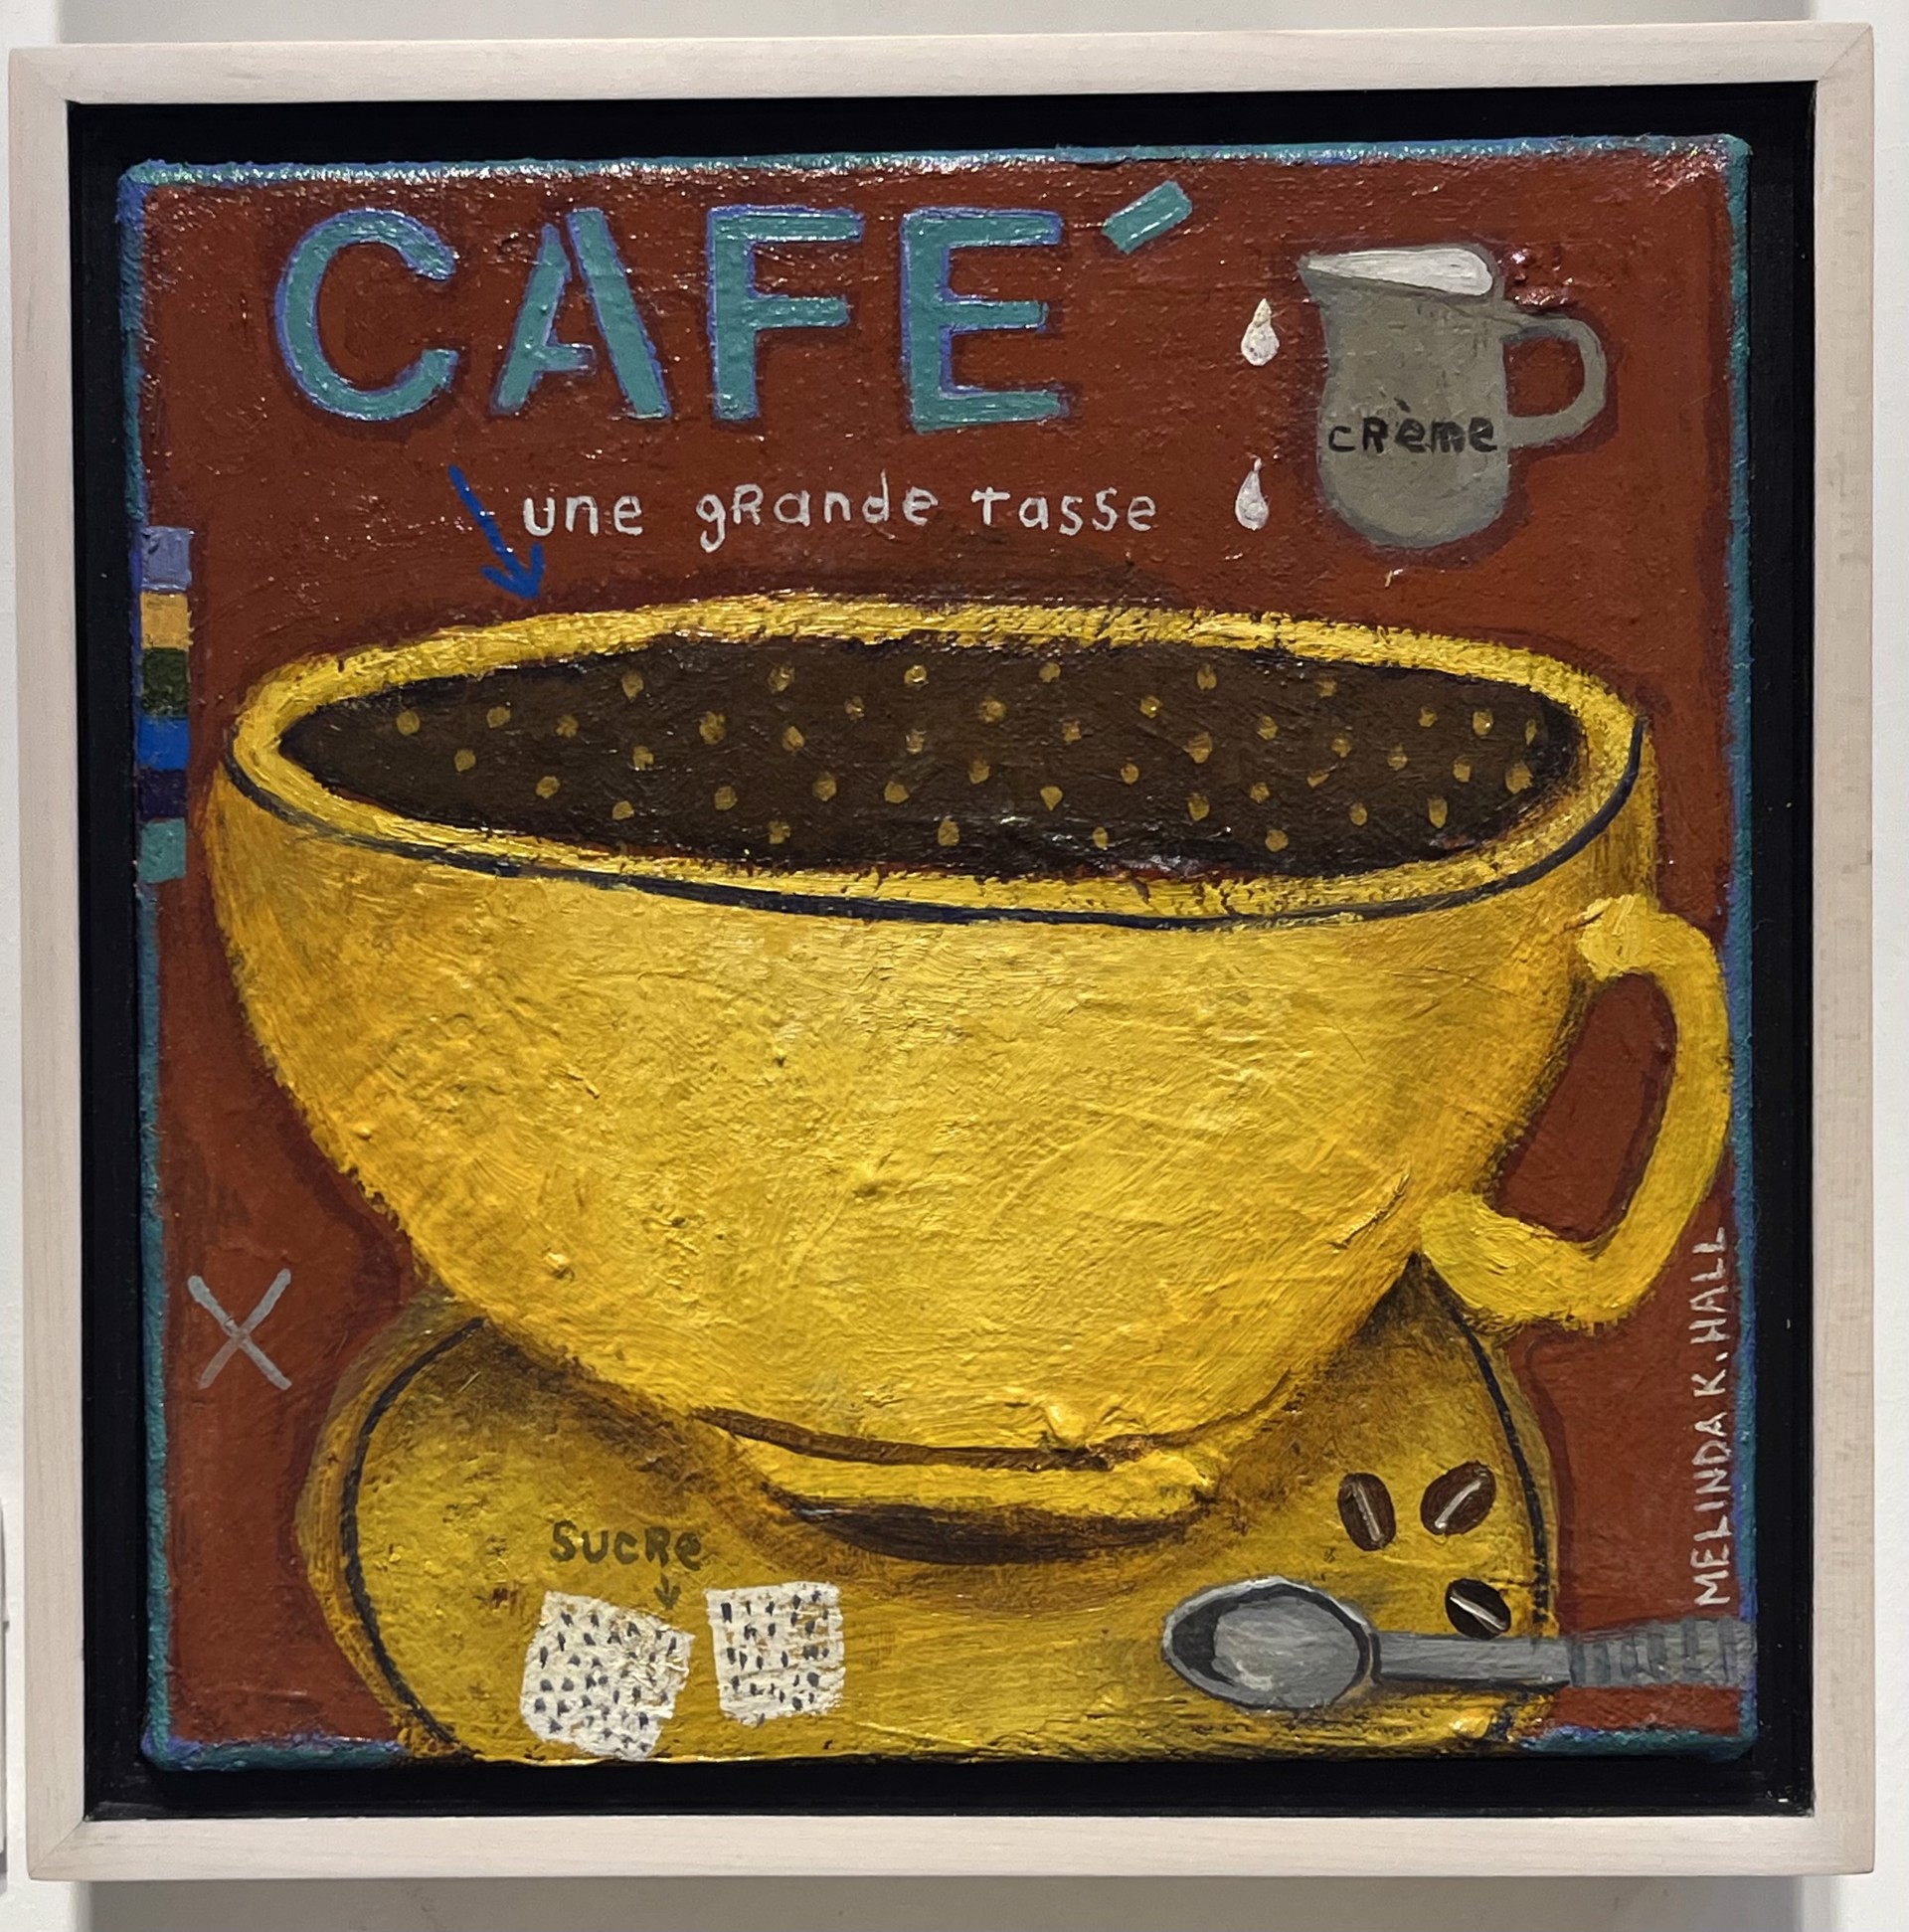 Cafe':  Une Grande Tasse by Melinda K. Hall